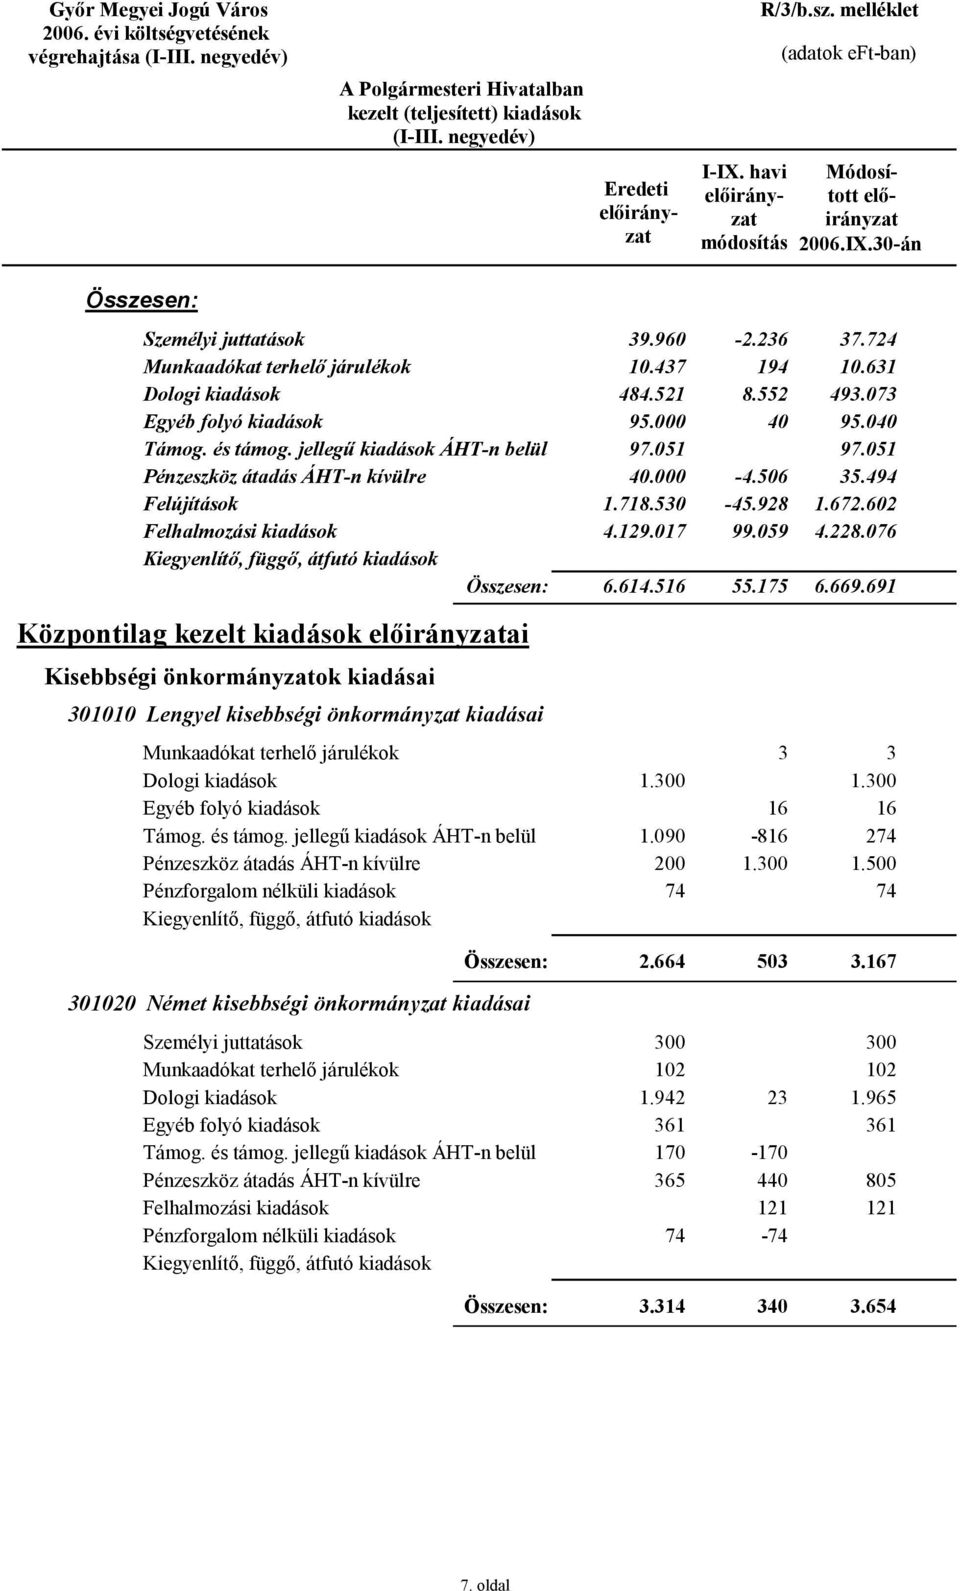 691 Központilag kezelt kiadások ai Kisebbségi önkormányzatok kiadásai 311 Lengyel kisebbségi önkormányzat kiadásai 1.3 1.